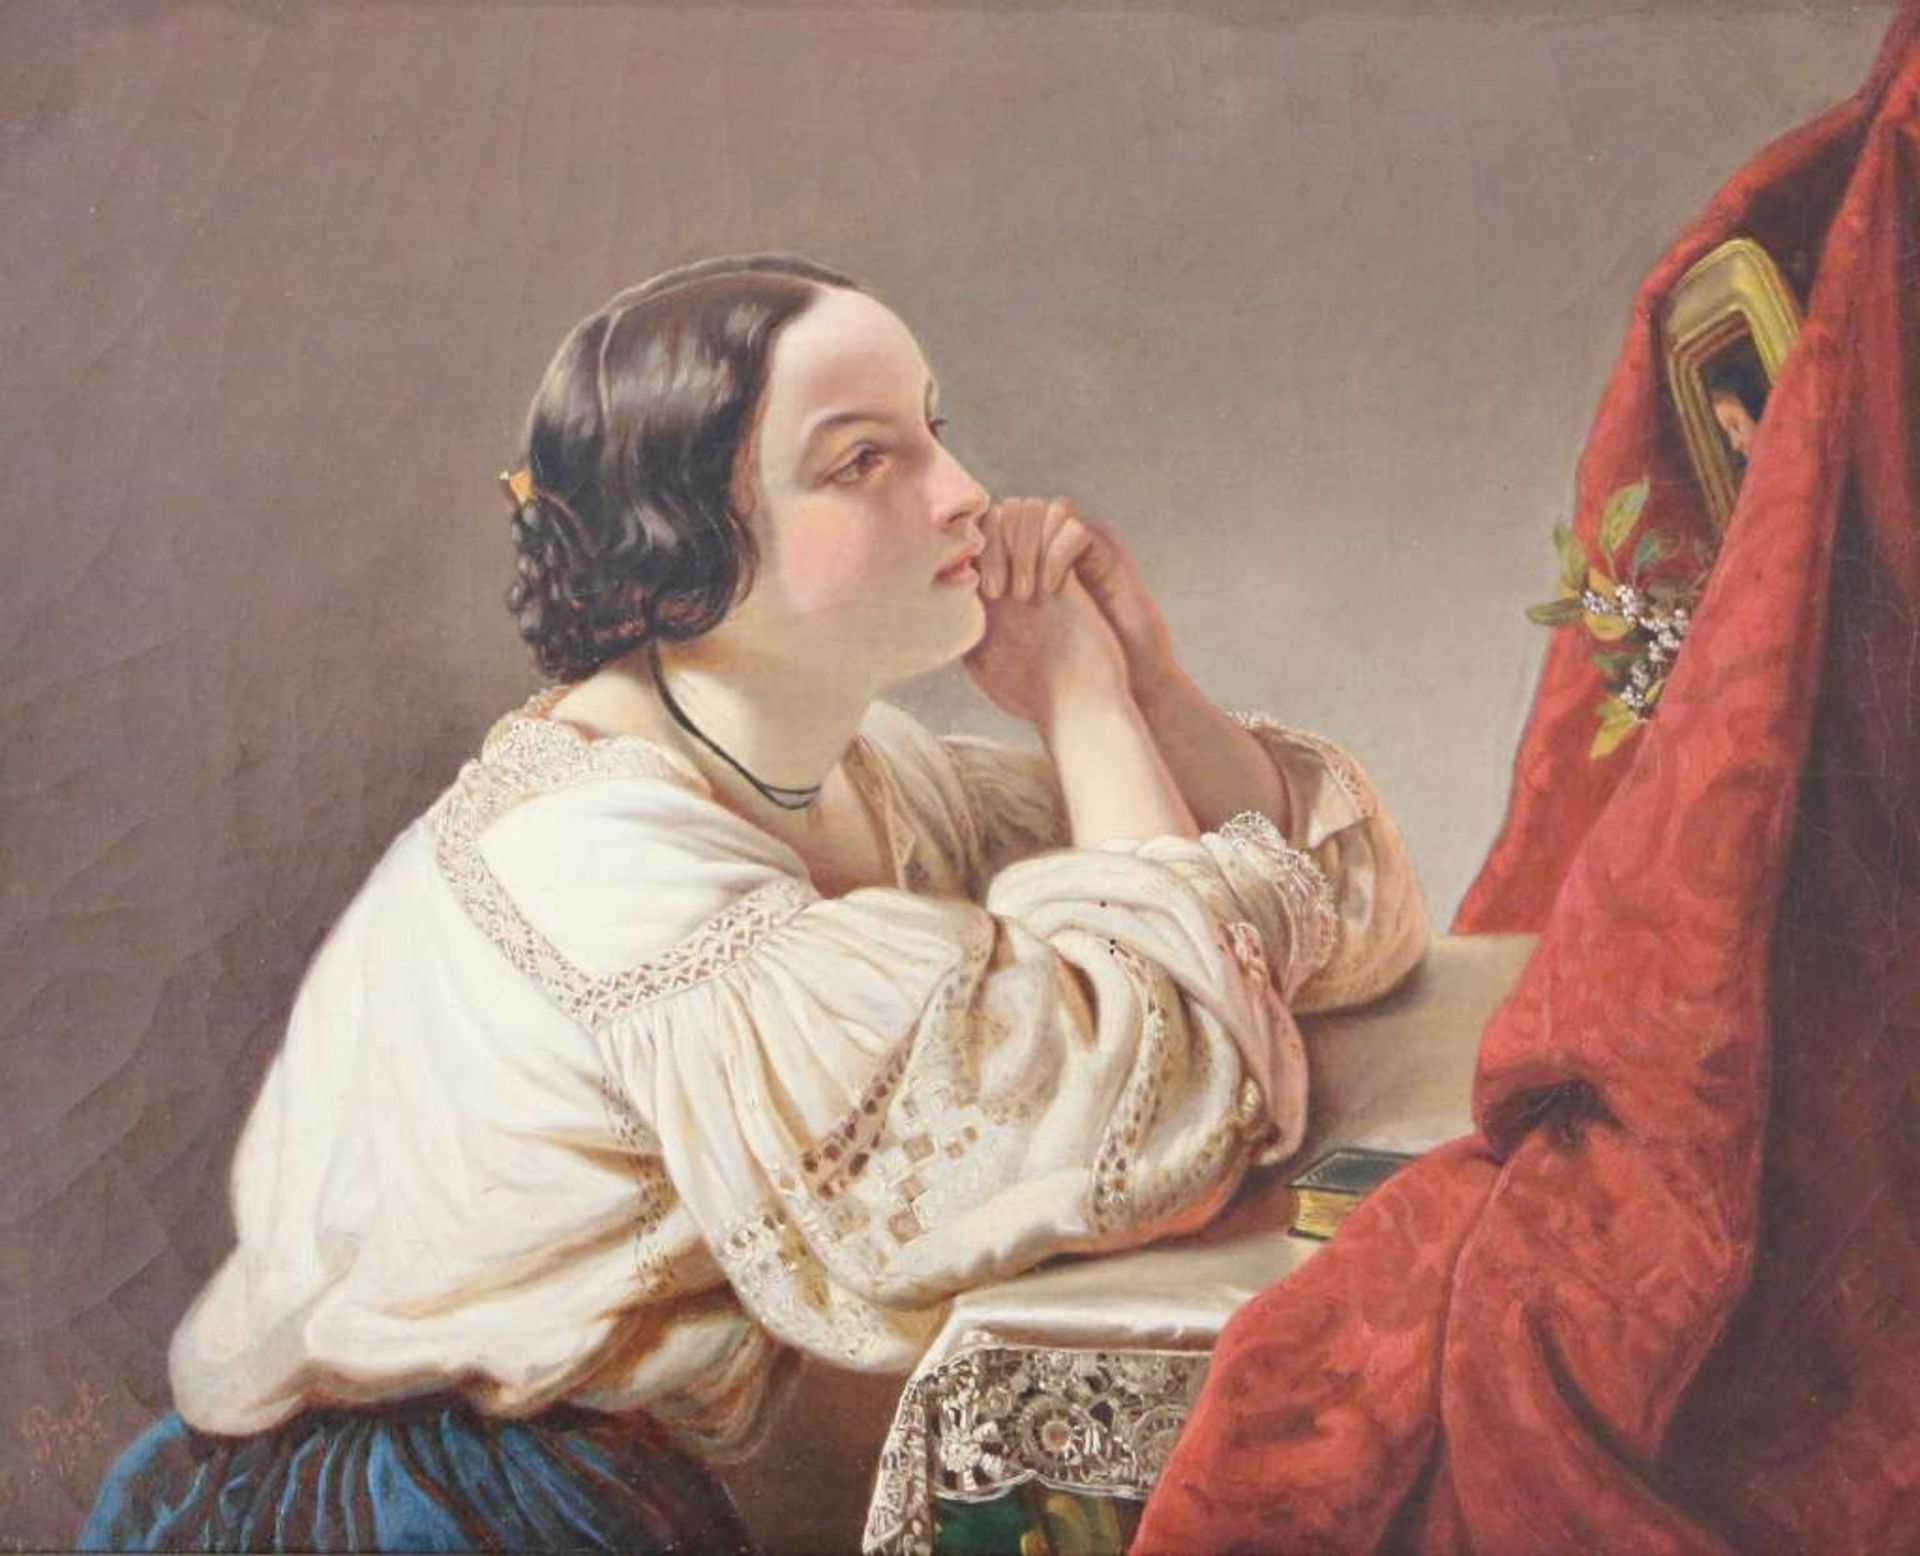 Hermine VON RECK (1833-1906), junge Frau bei der Andacht, Öl auf Leinwand, u.li. sign. und dat.